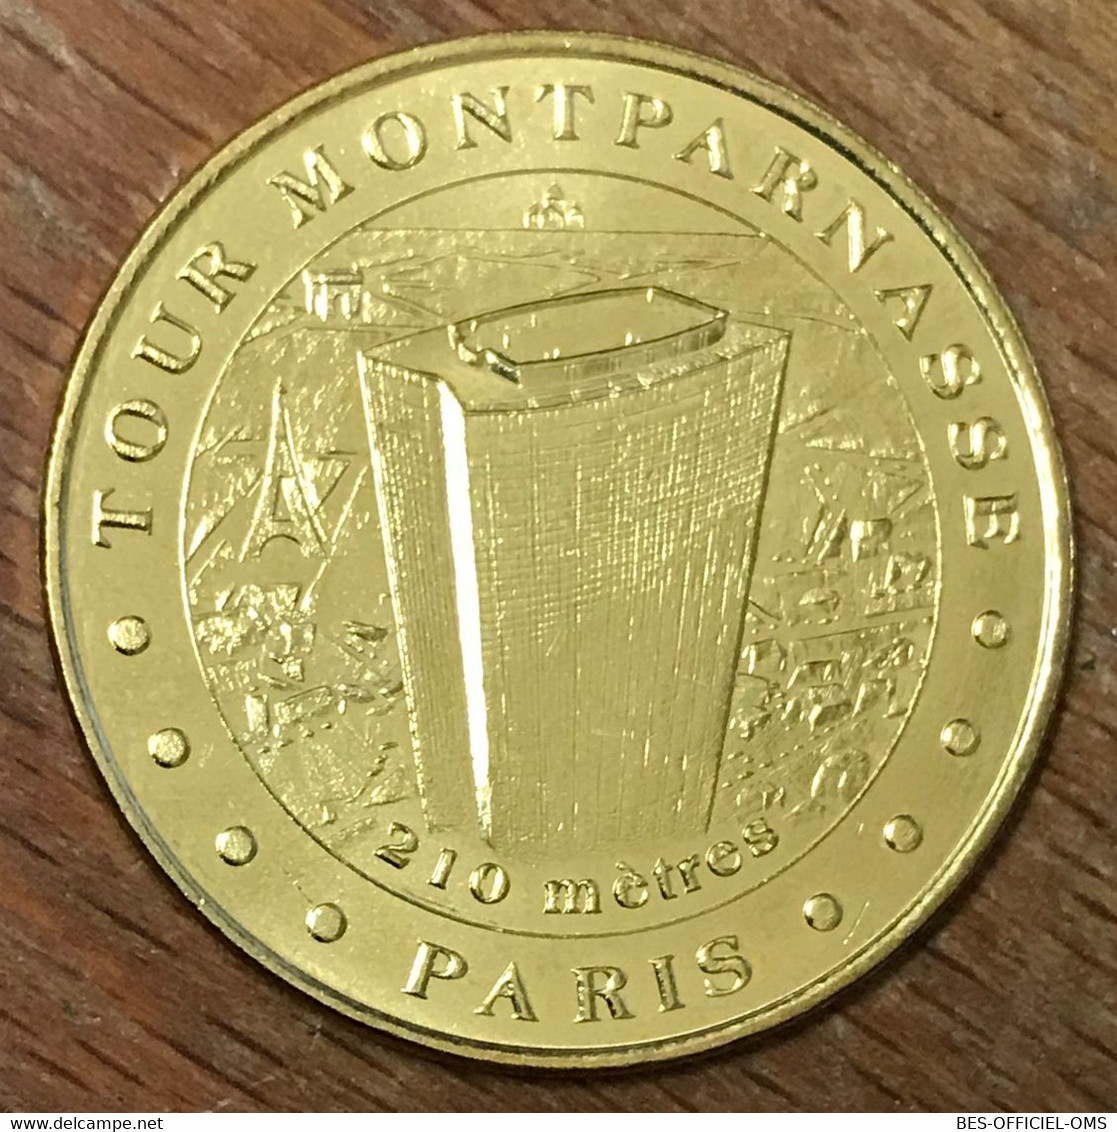 75015 PARIS TOUR MONTPARNASSE MDP 2018 MÉDAILLE SOUVENIR MONNAIE DE PARIS JETON TOURISTIQUE MEDALS COINS TOKENS - 2018